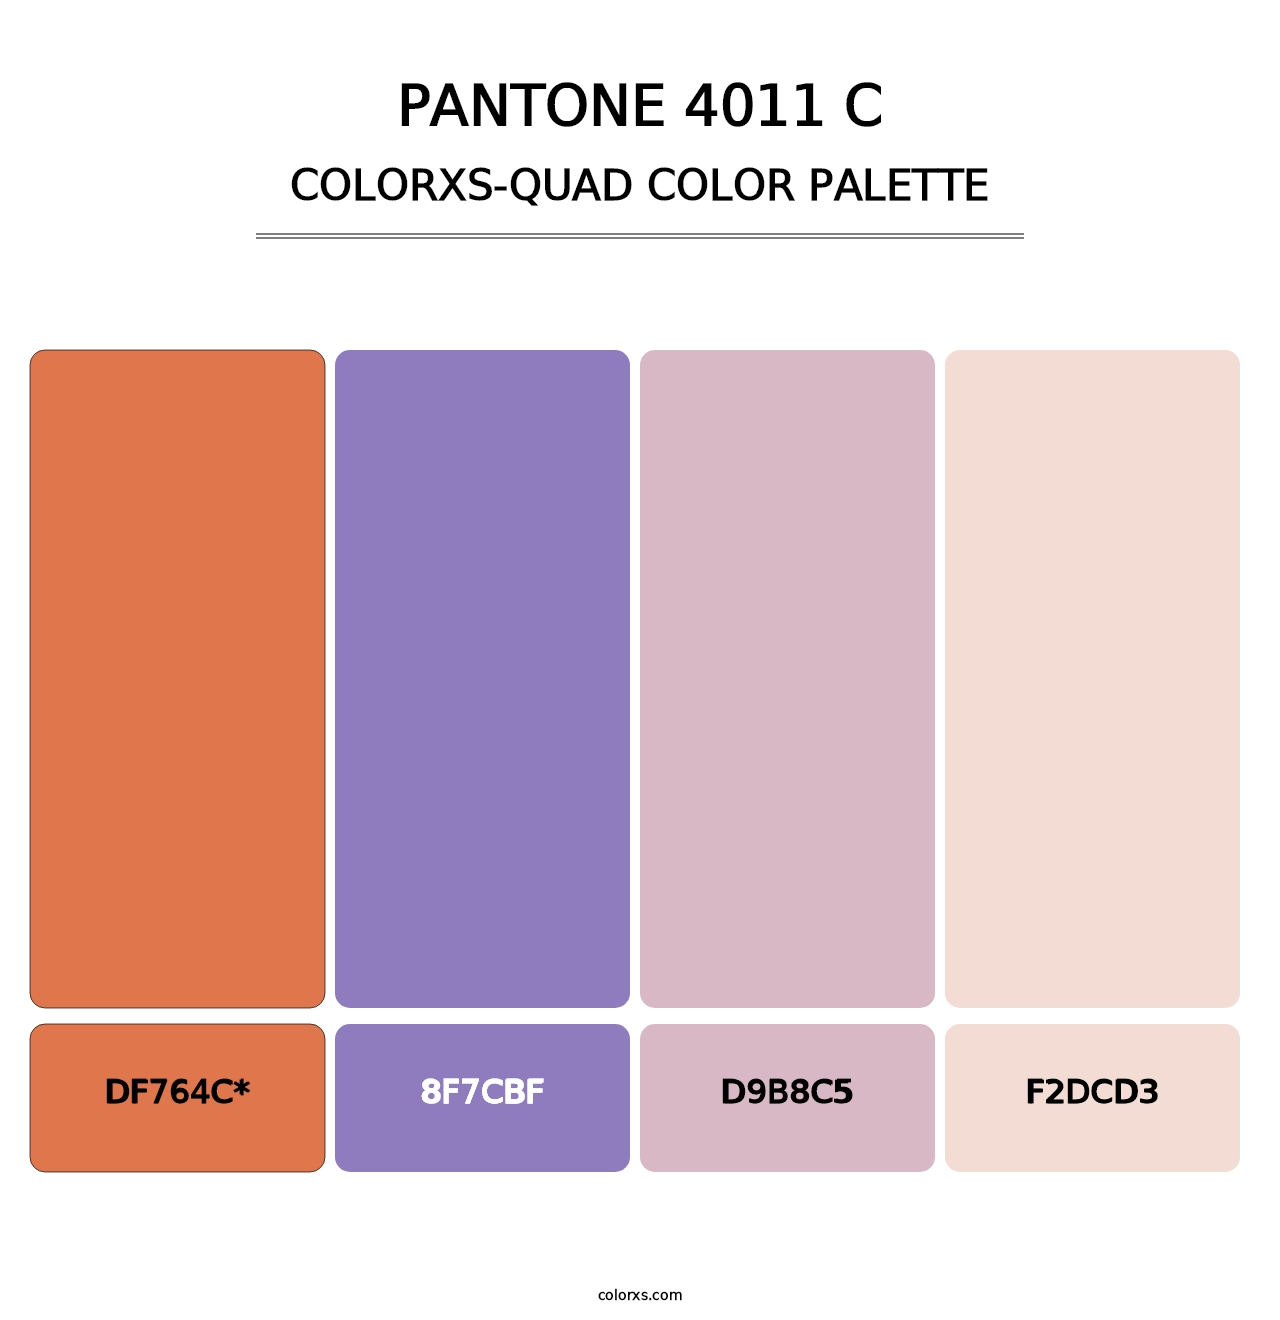 PANTONE 4011 C - Colorxs Quad Palette